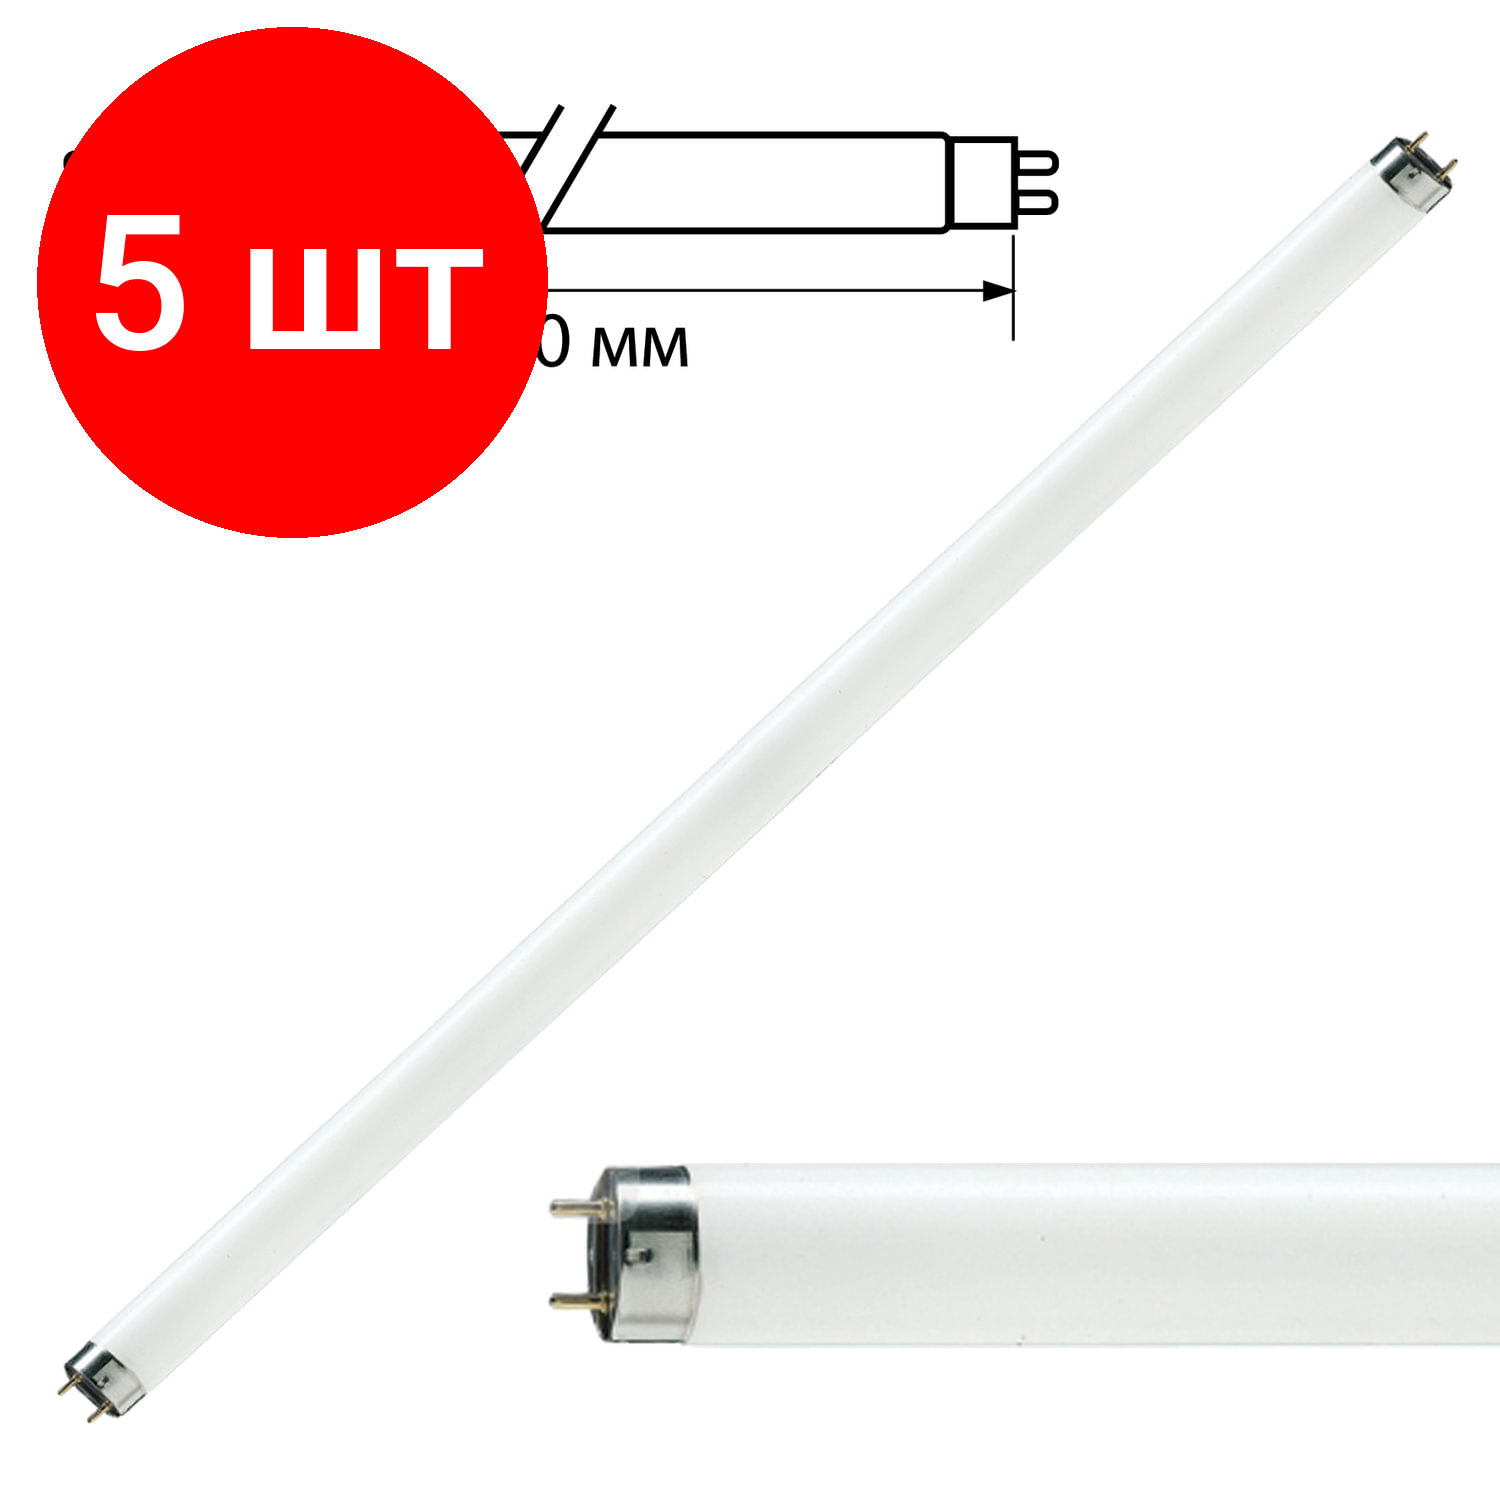 Комплект 5 шт, Лампа люминесцентная PHILIPS TL-D 36W/33-640, 36 Вт, цоколь G13, в виде трубки 120 см